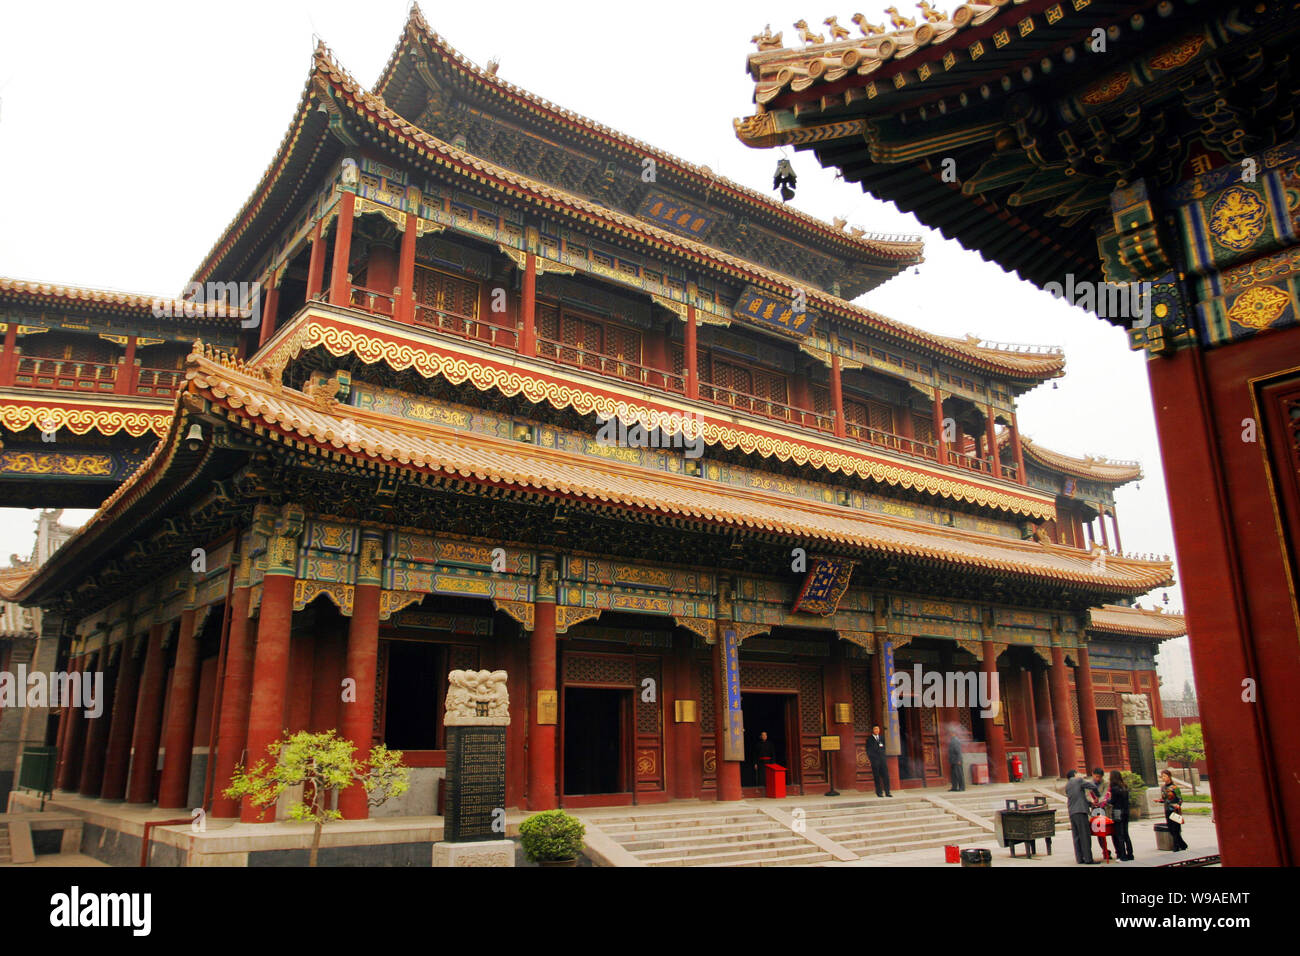 Les touristes visitent le Yonghe Gong (le Yonghegong, le Palais de l'harmonie éternelle ou la Lamaserie Yonghe Gong) à Beijing, Chine, 26 avril 2006. Banque D'Images